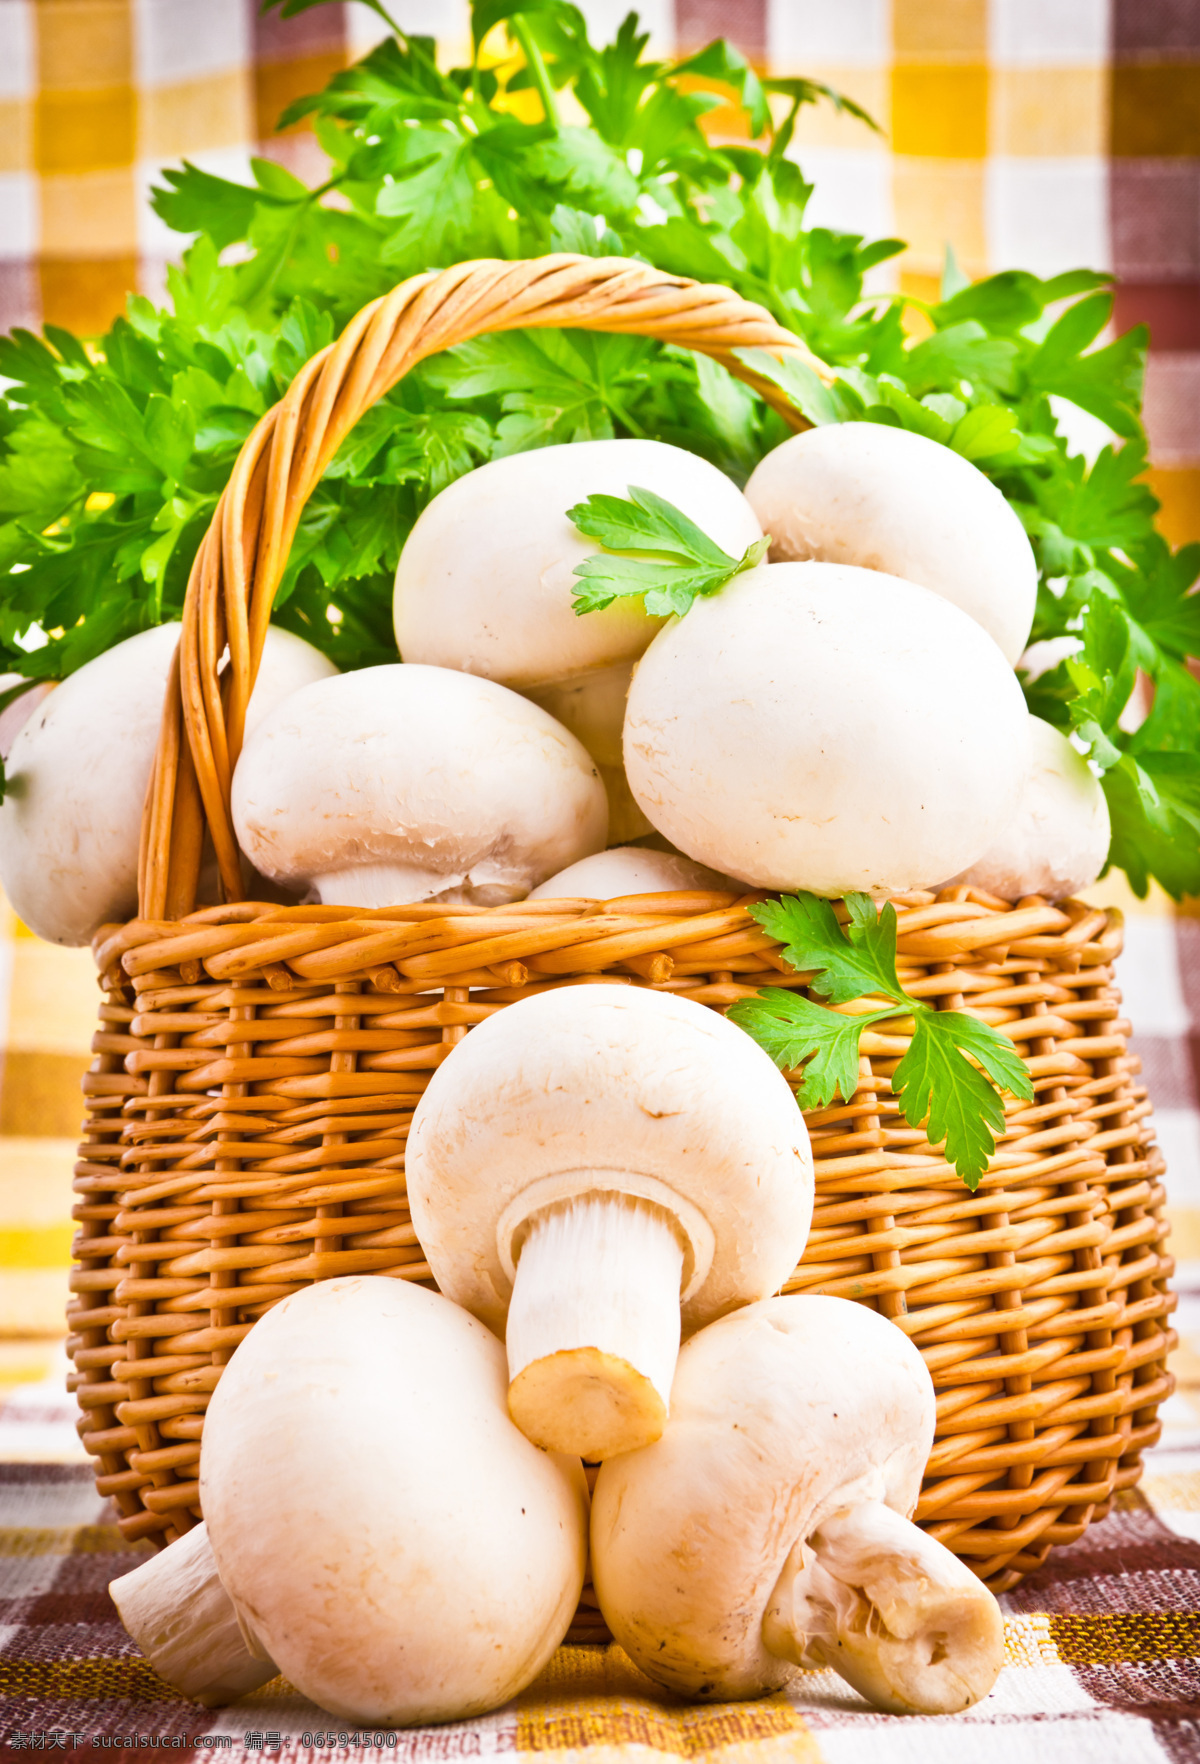 蘑菇 青菜 背景 叶子 蘑菇素材 蘑菇摄影 美食 食物 篮子 蔬菜 水果蔬菜 餐饮美食 白色